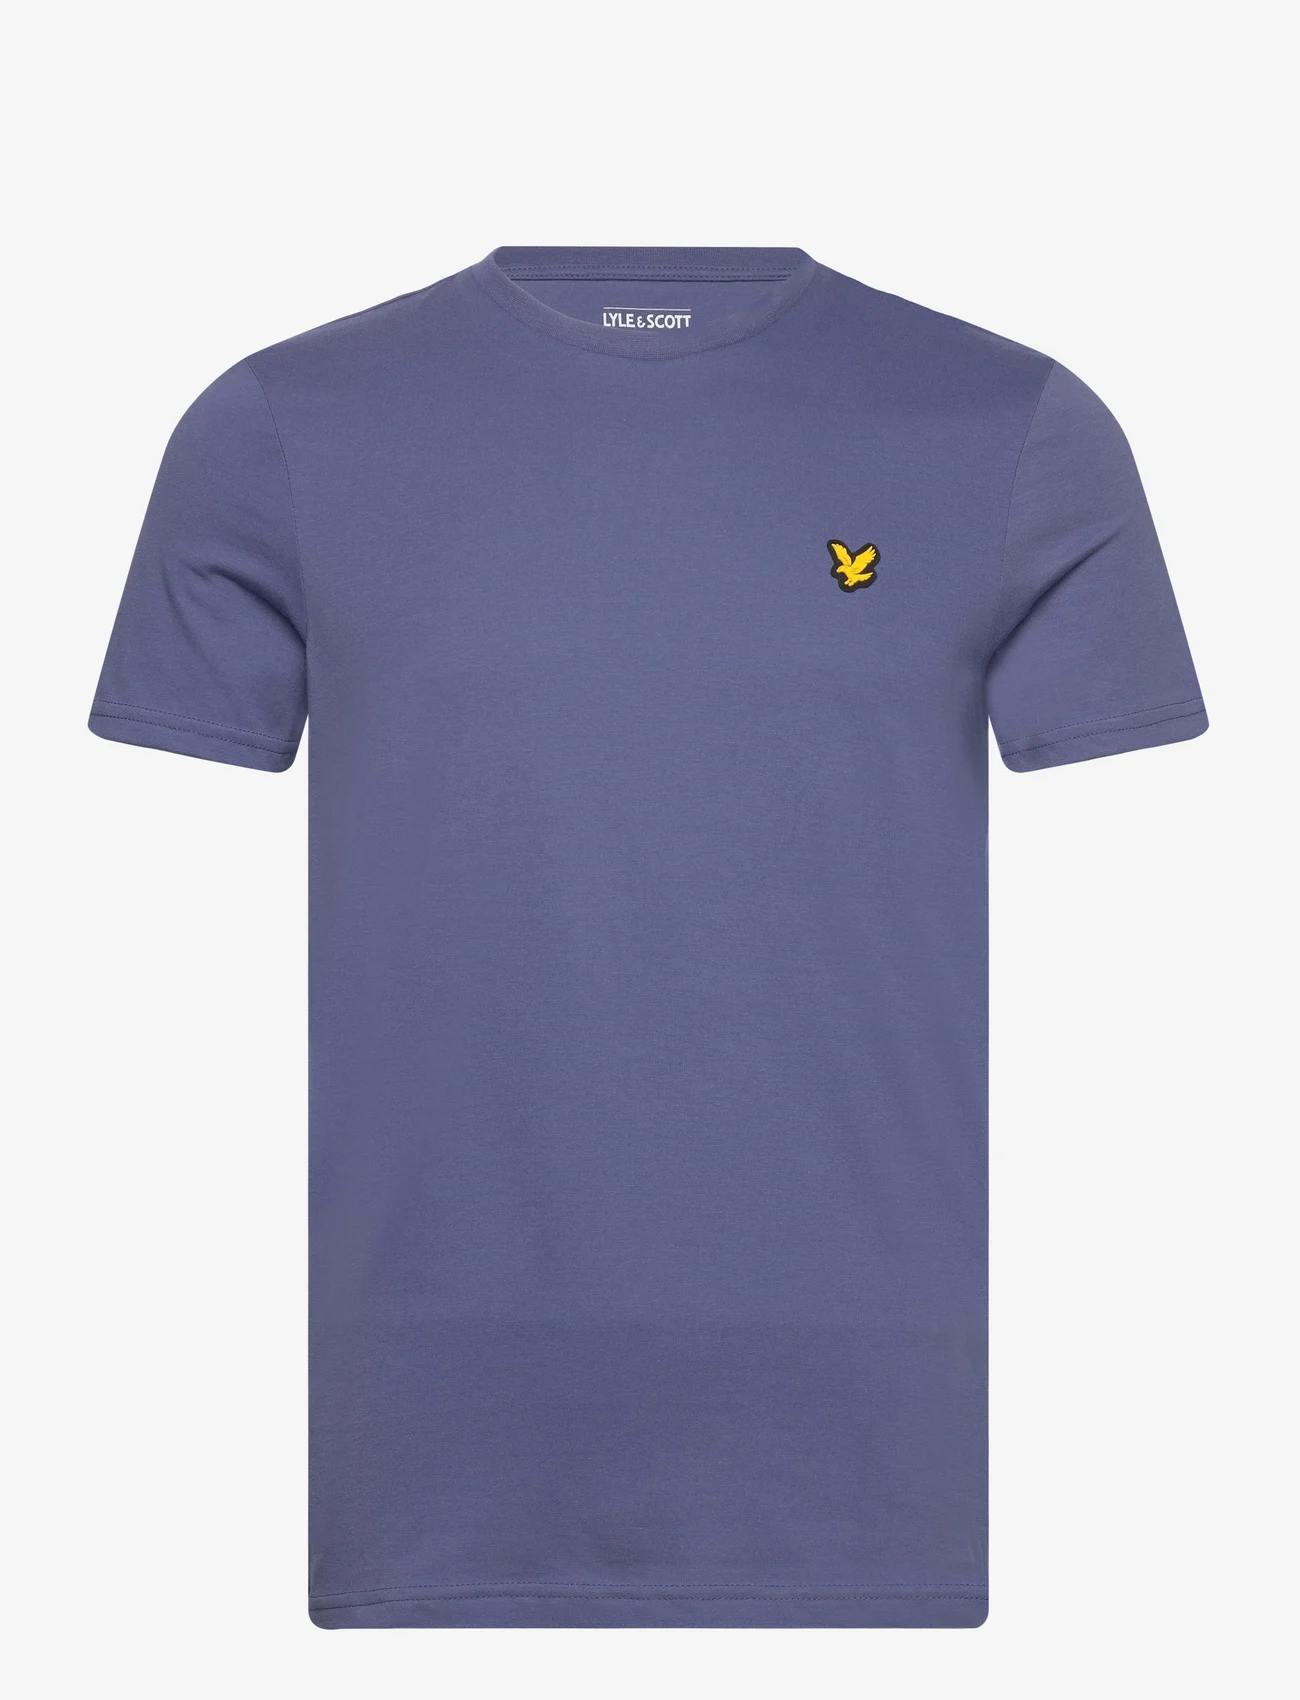 Lyle & Scott Sport - Martin SS T-Shirt - short-sleeved t-shirts - a10 storm blue - 0